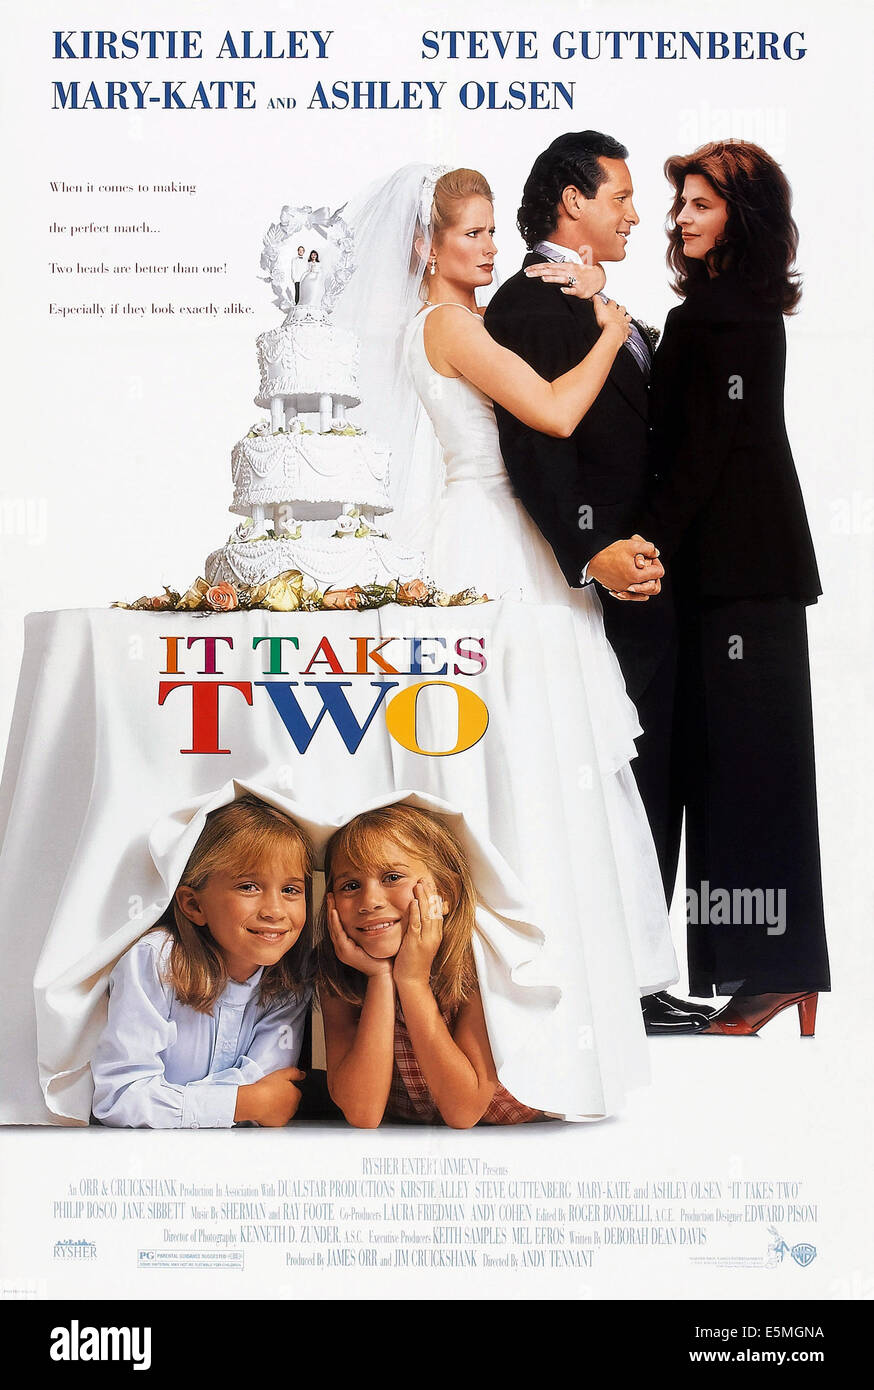 Il faut être deux, de nous poster art, bas : Ashley Olsen, Mary-Kate Olsen, haut : Jane Sibbett, Steve Guttenberg, Kirstie Alley, 1995. Banque D'Images